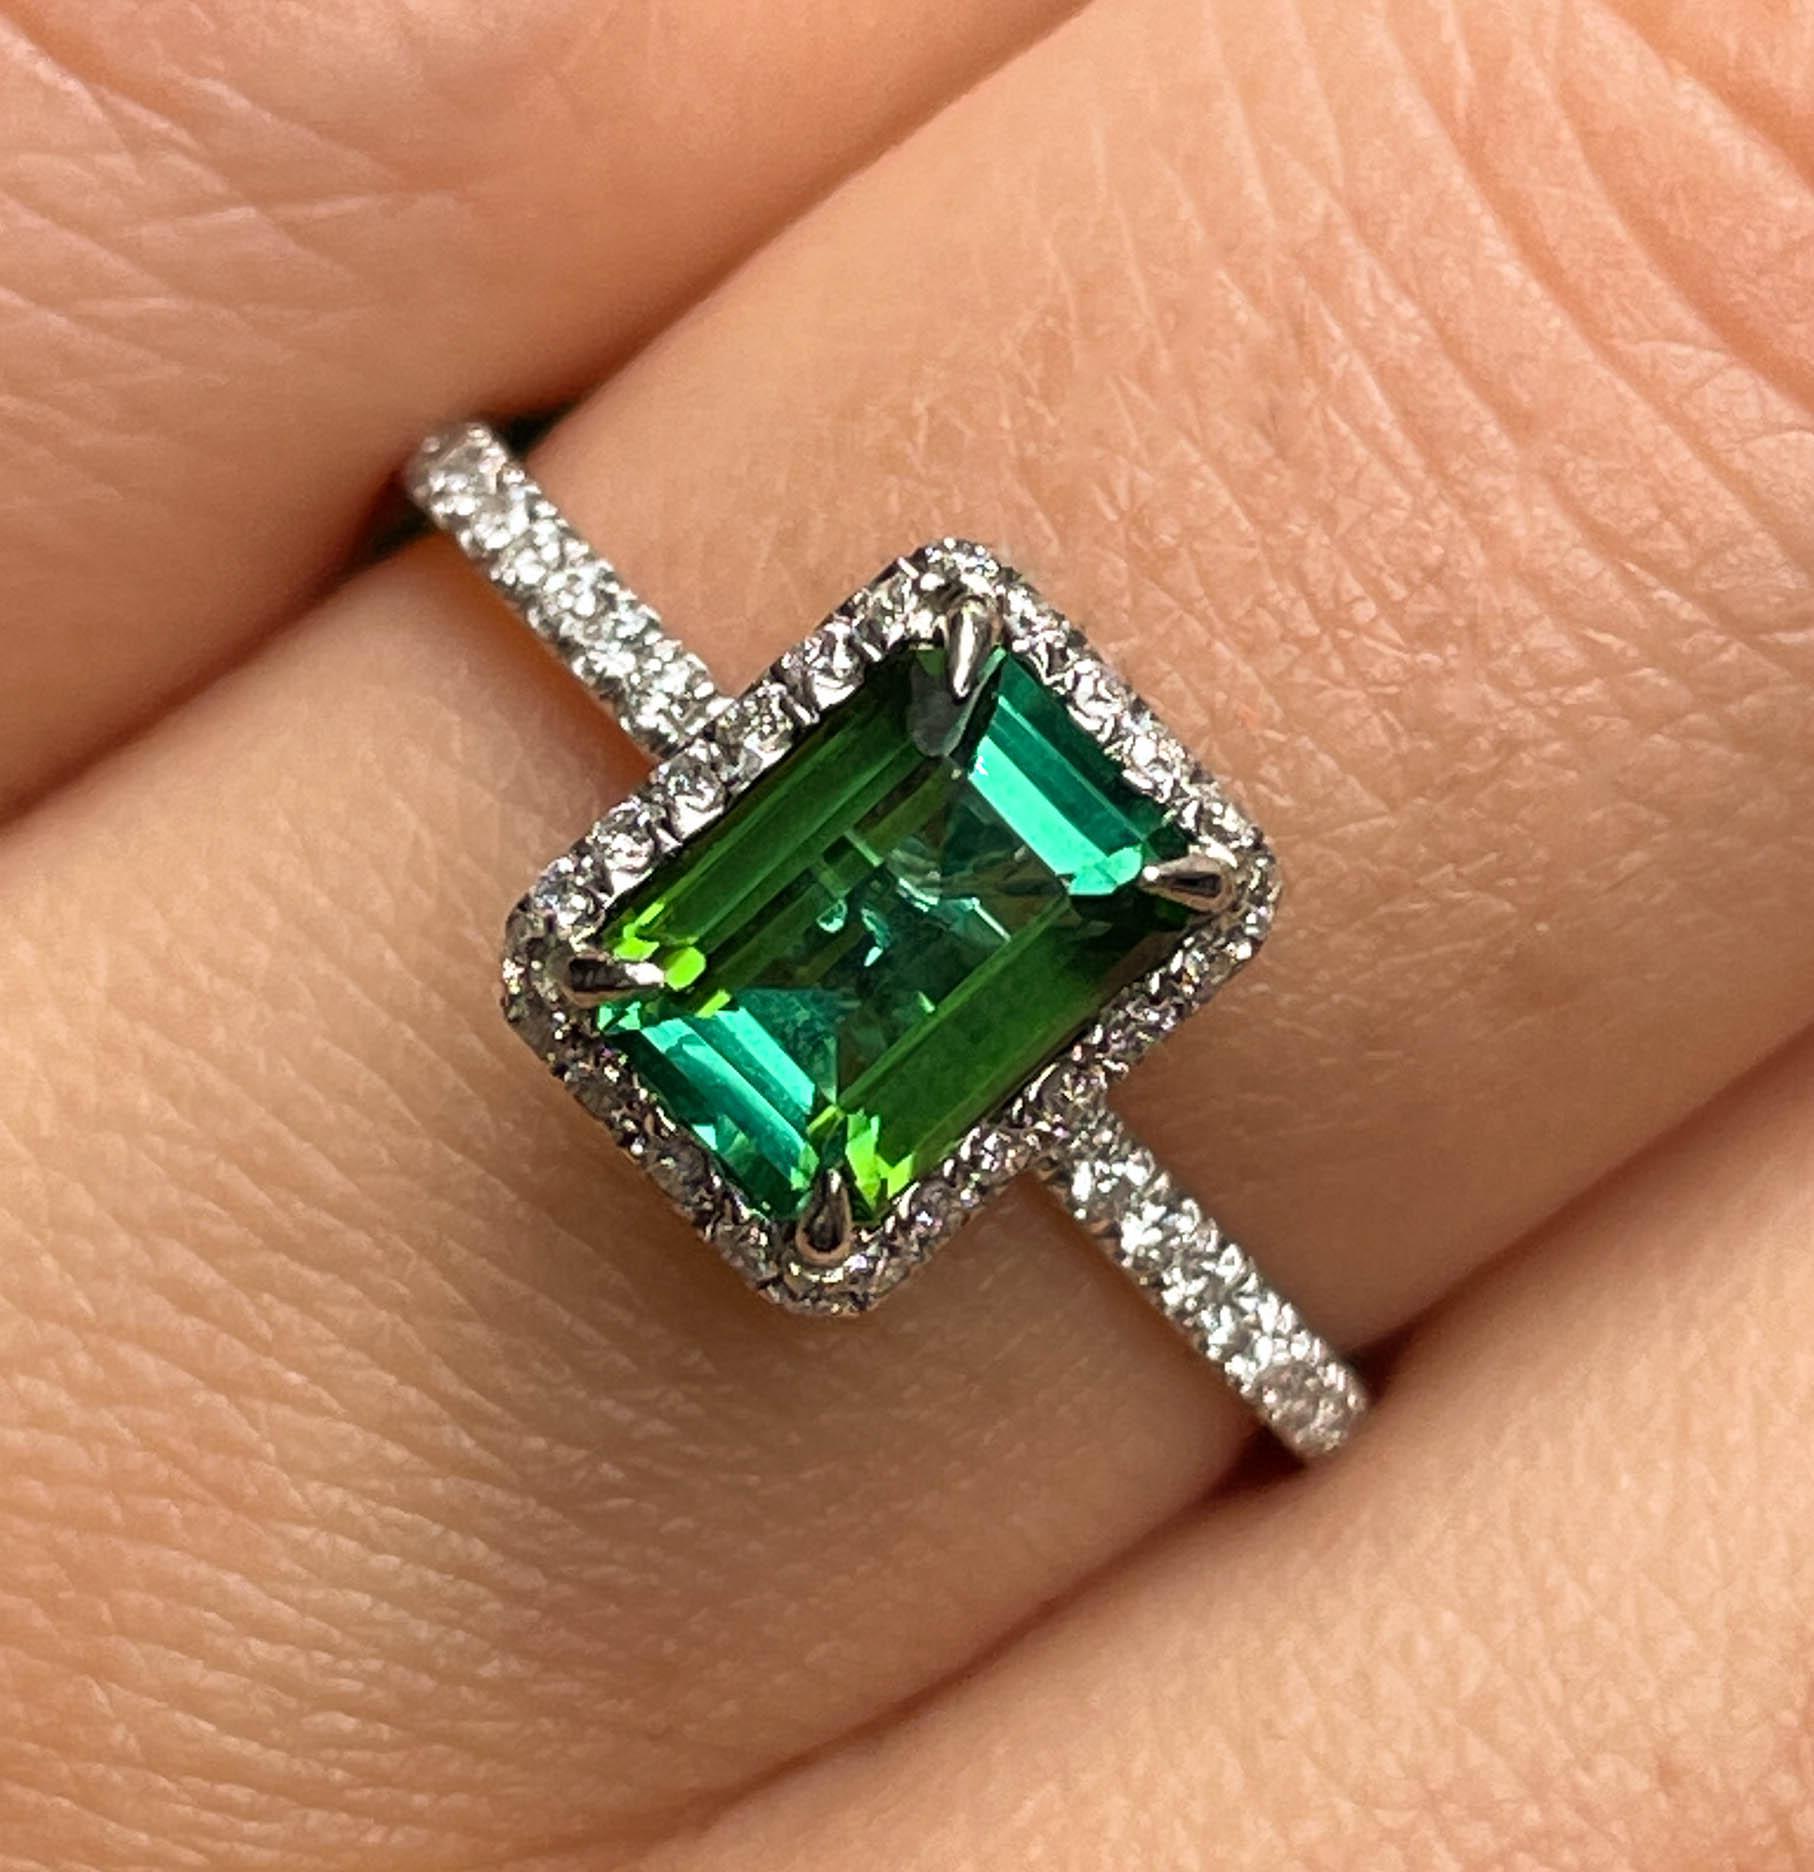 Eine schöne und elegante Estate Grüner Turmalin und Diamant-Ring mit 1,02ct natürlichen Schritt geschnitten Grüner Turmalin Center Stein.
Es ist in Micro Pave ausgeschnitten Halo Fassung in Platin (getestet), die Top's Umriss Messung ist 8,74 mm x